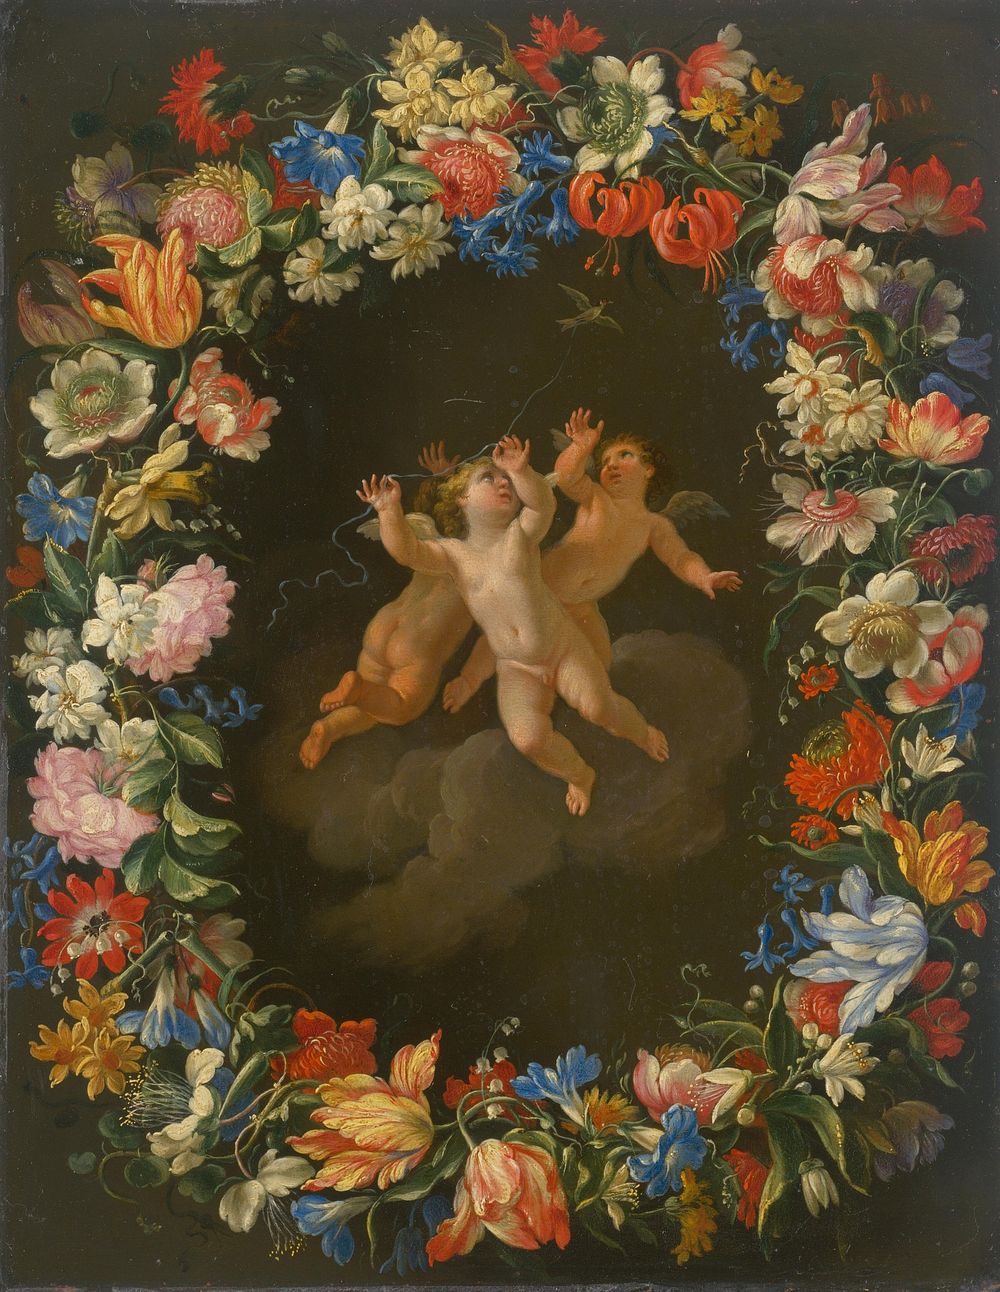 Angels in a flower wreath ii.